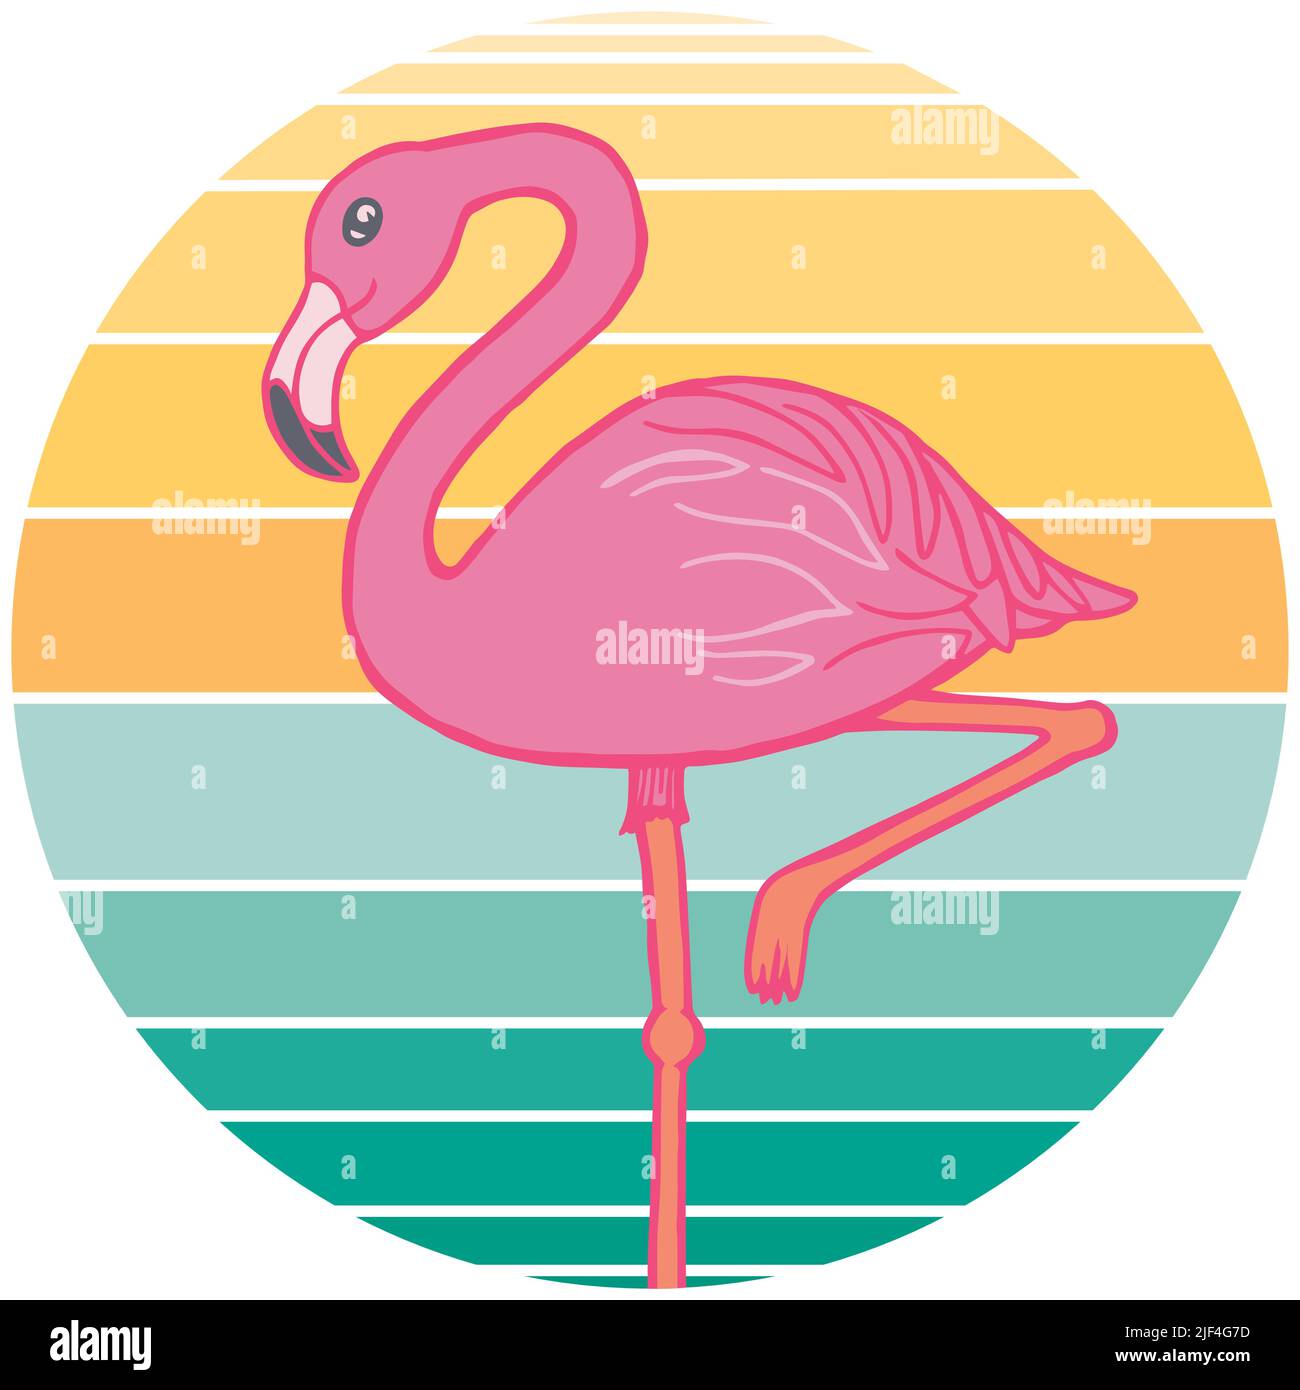 Eine rosa Flamingo Vektor-Illustration auf einem Retro-Sonnenuntergang Kreis Hintergrund. Perfekt für Souvenirs, Florida-Produkte und mehr. Stock Vektor